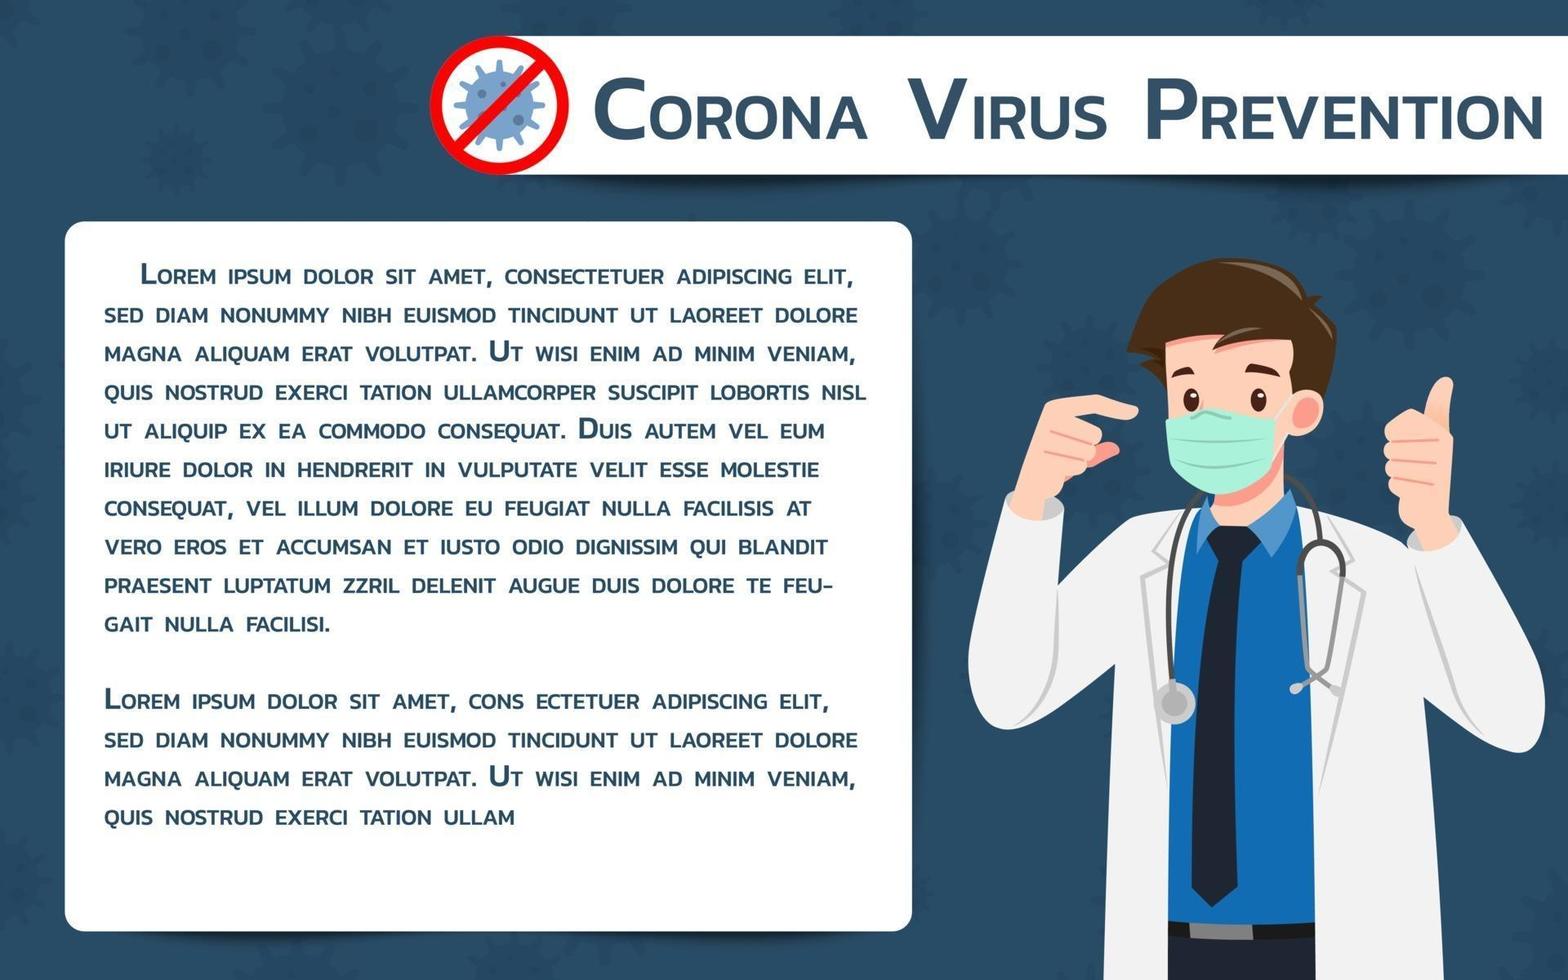 läkare bär skyddsmask mot viruset. kampen mot coronavirus infografisk banner. vektor